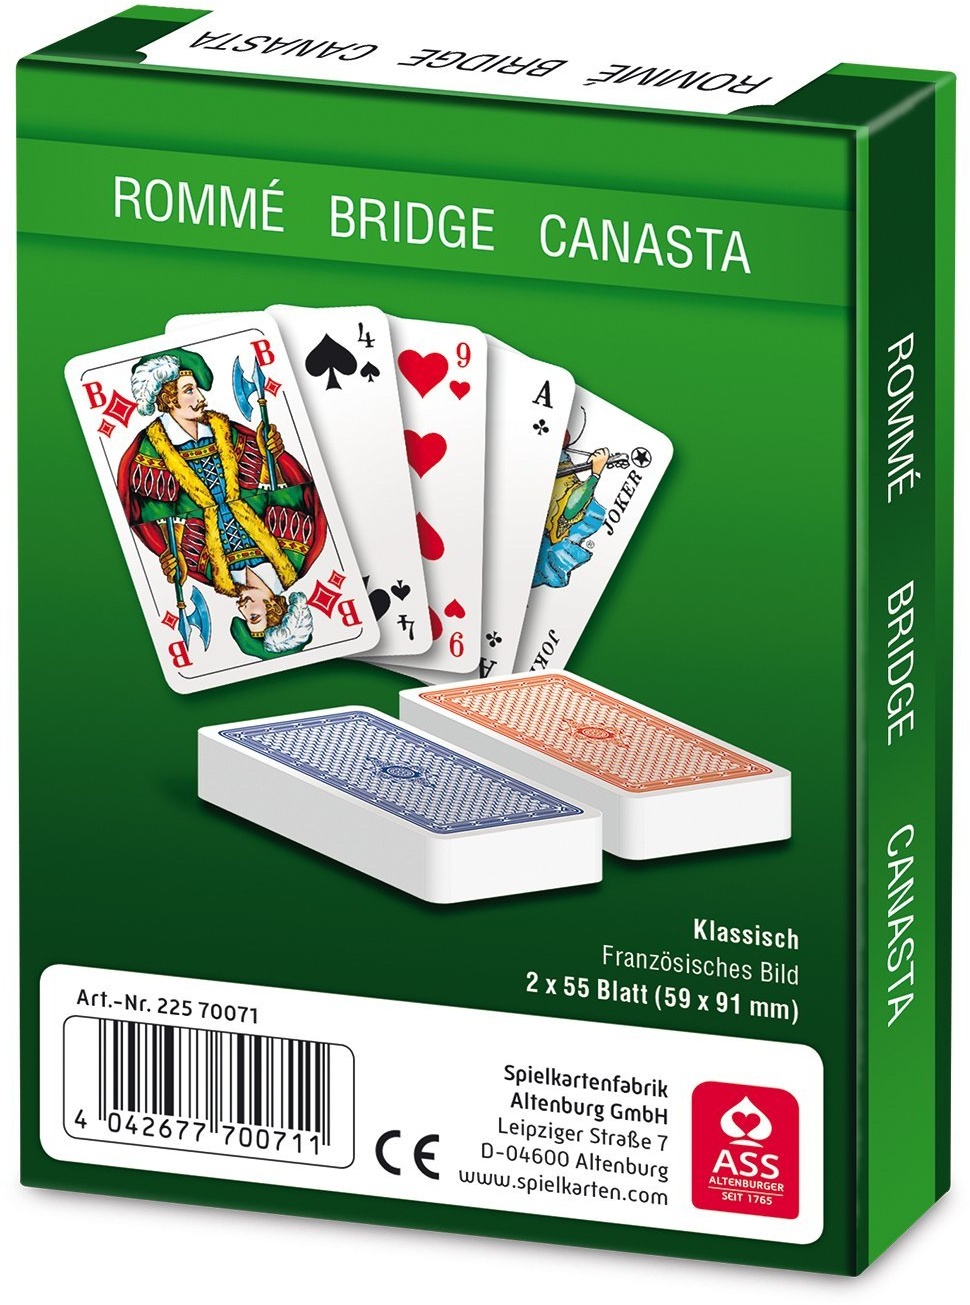 5 Romme Canasta Bridge Leinen Kartenspiele Spiele und Spielkarten von Frobis 